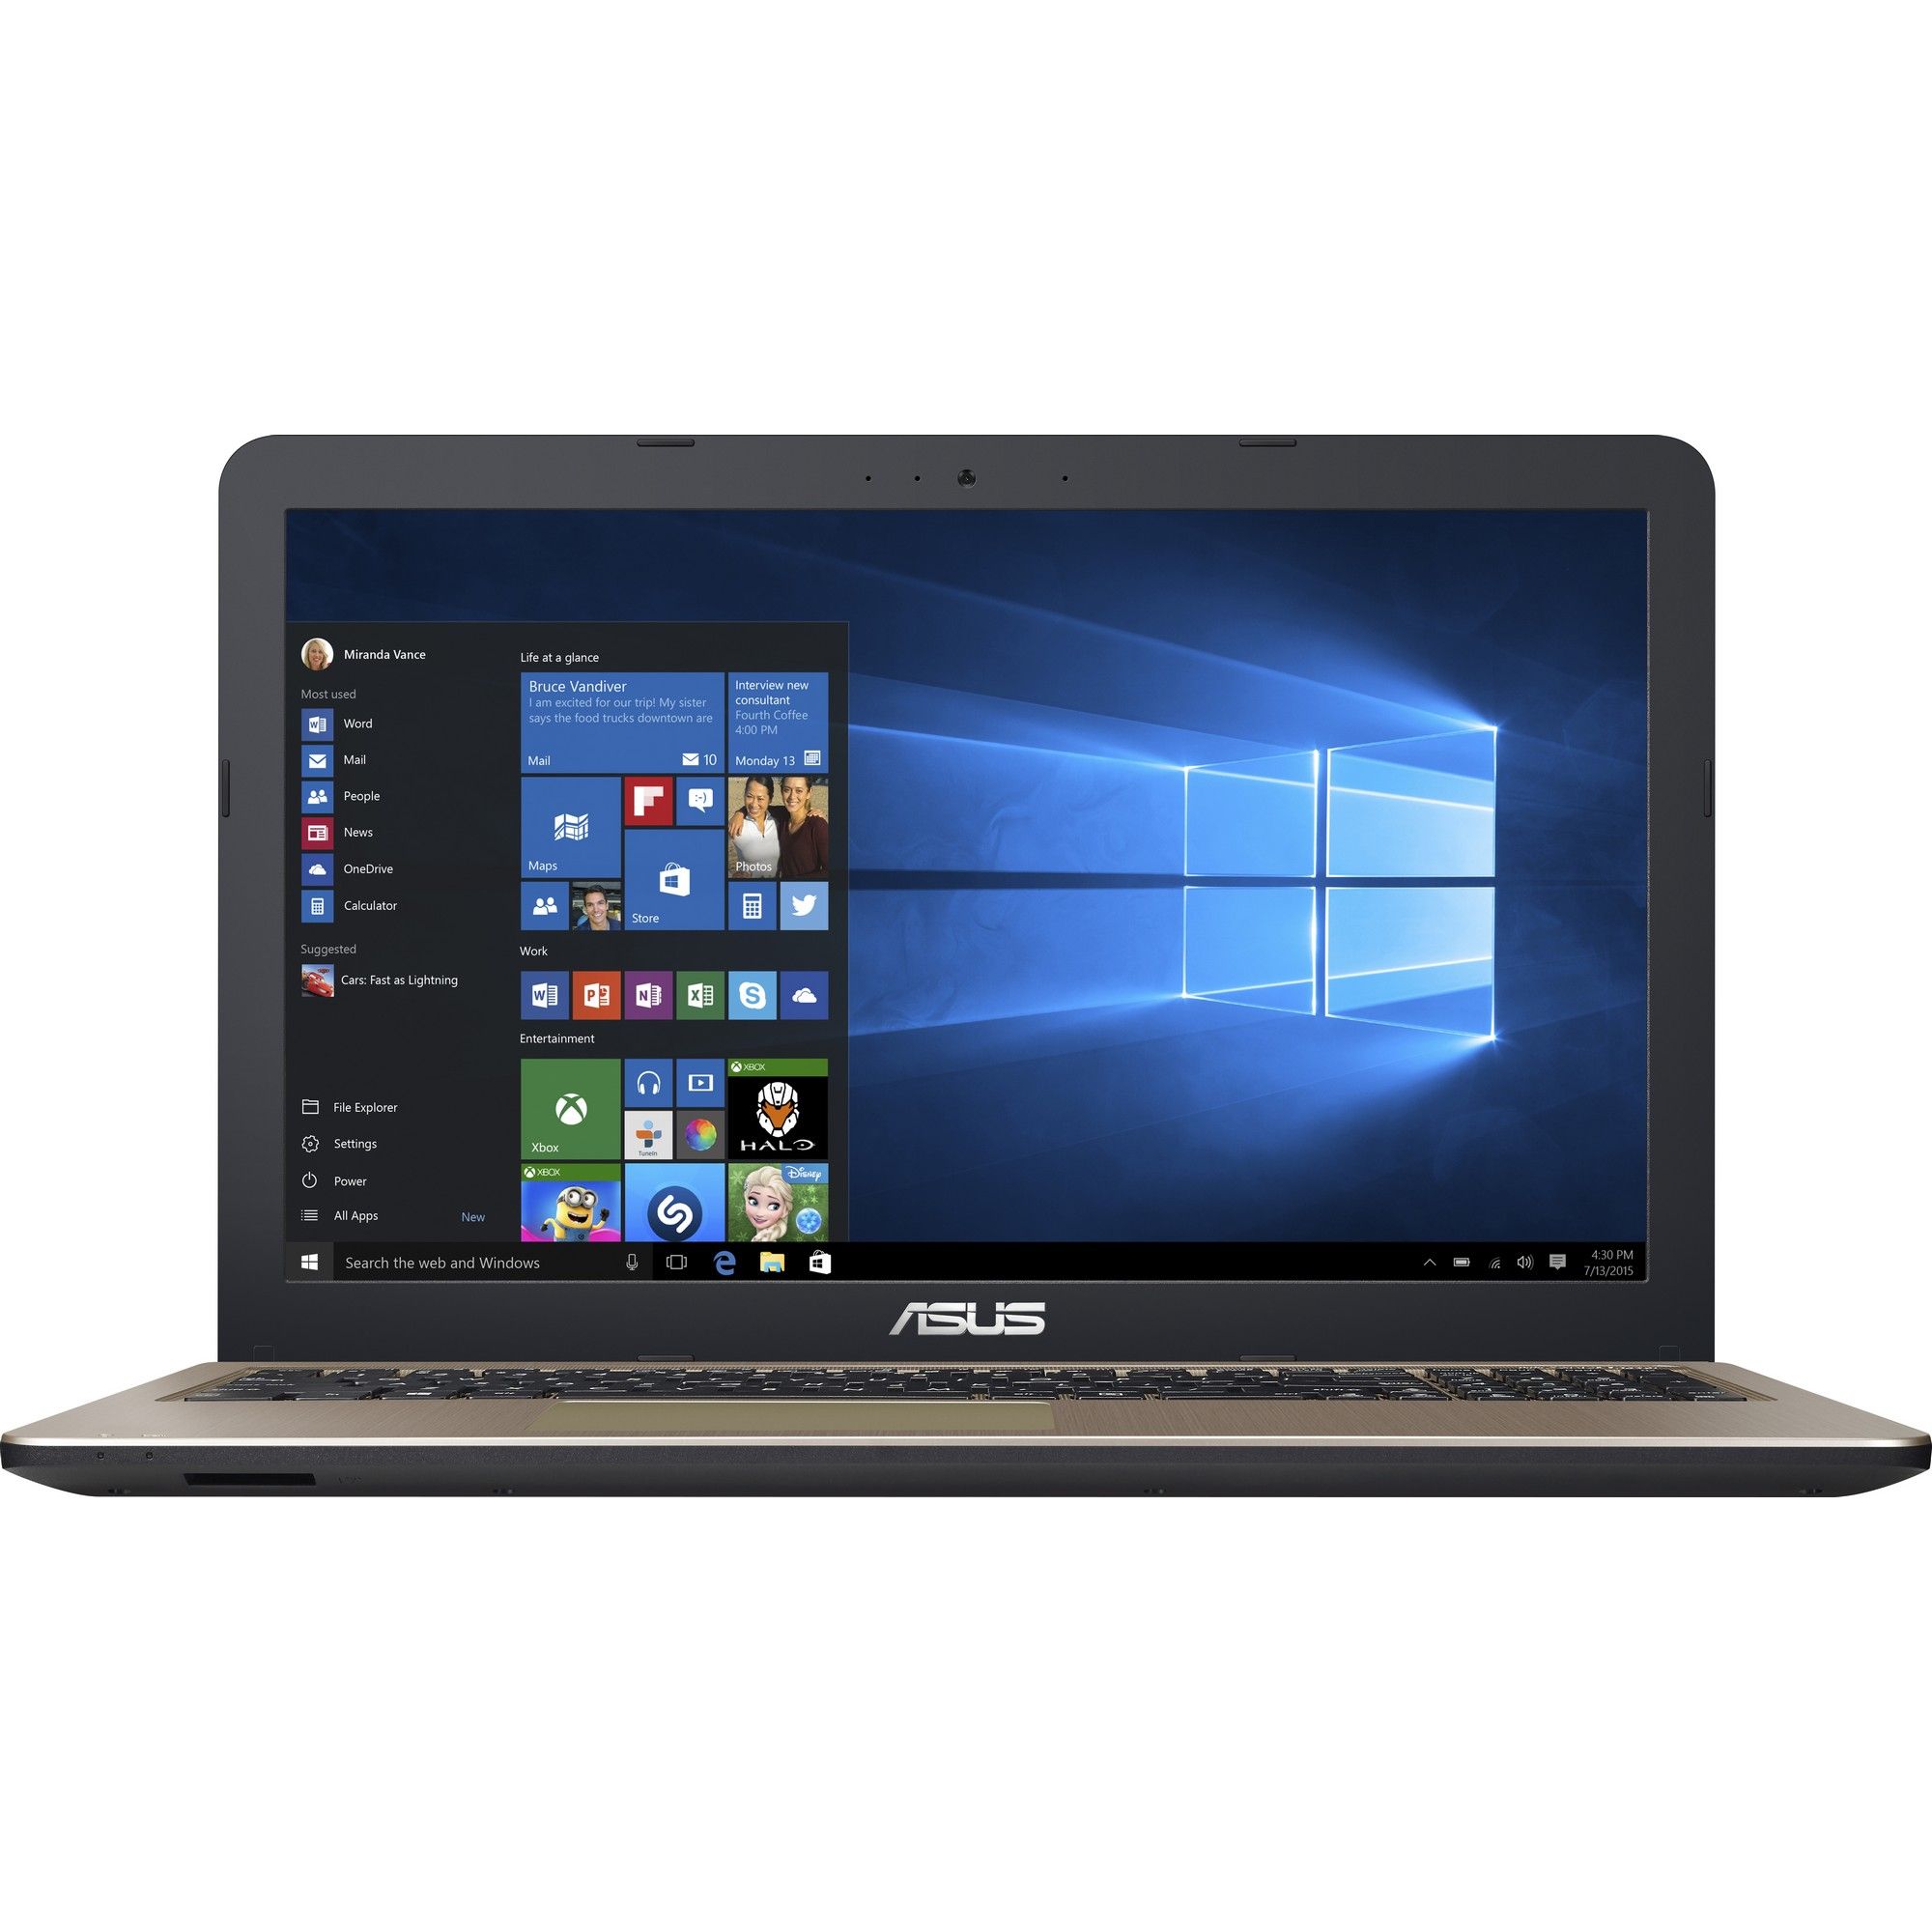 Laptop Asus X540LA-XX265T, Intel Core i3-5005U, 4GB DDR3, HDD 500GB, Intel HD Graphics, Windows 10 Home